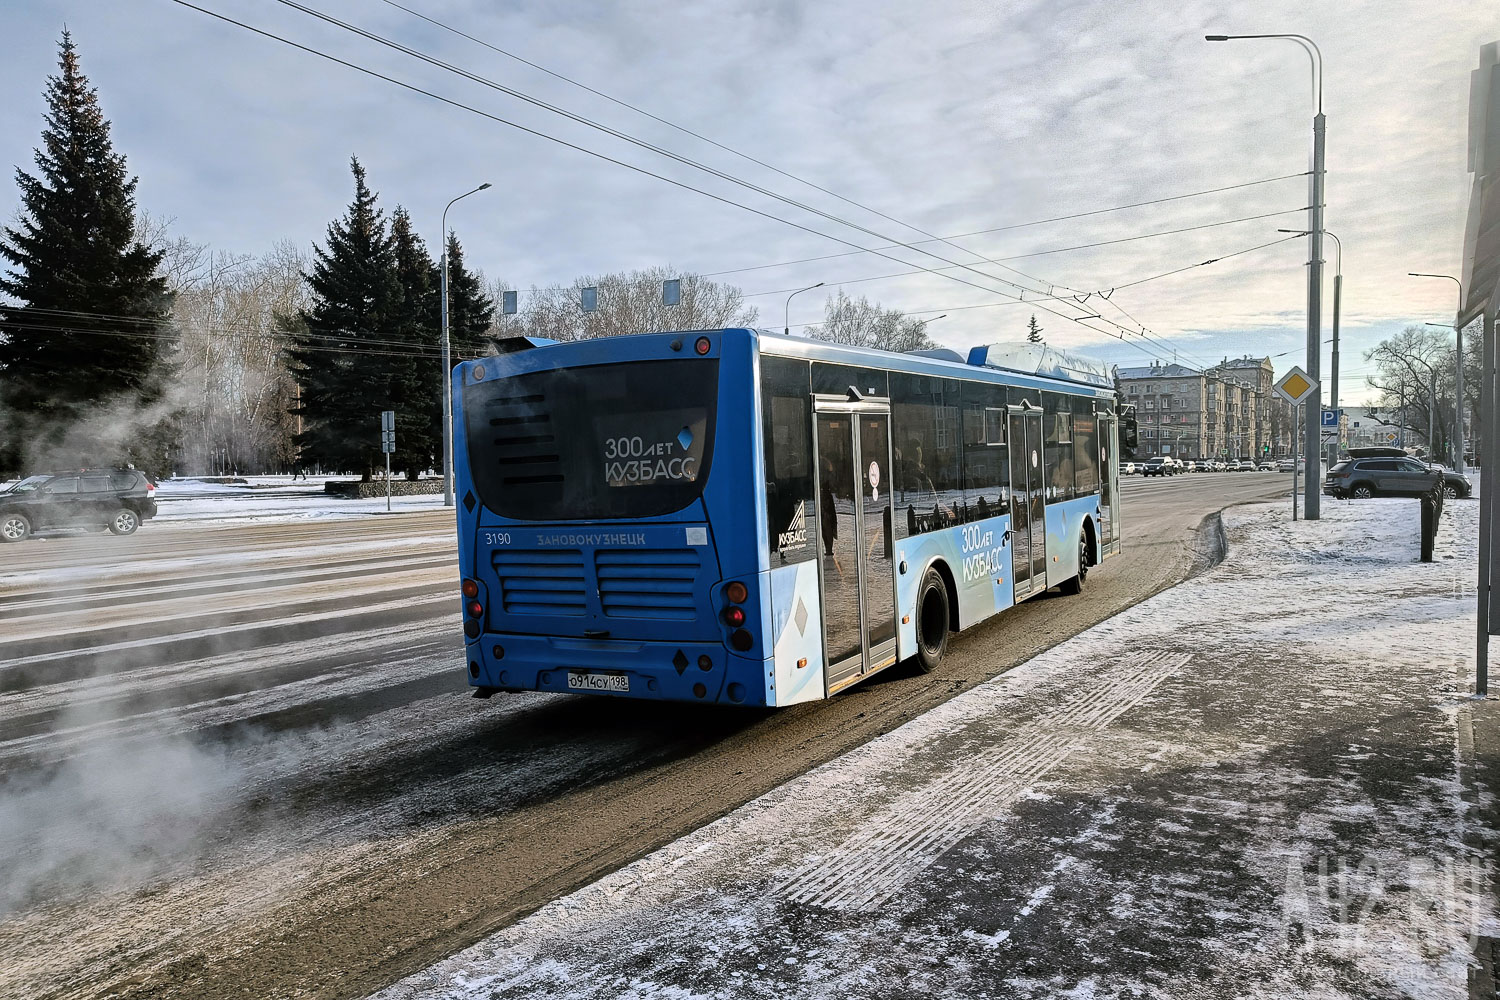 Жительница Кузбасса пожаловалась на невыполнение автобусных рейсов по расписанию